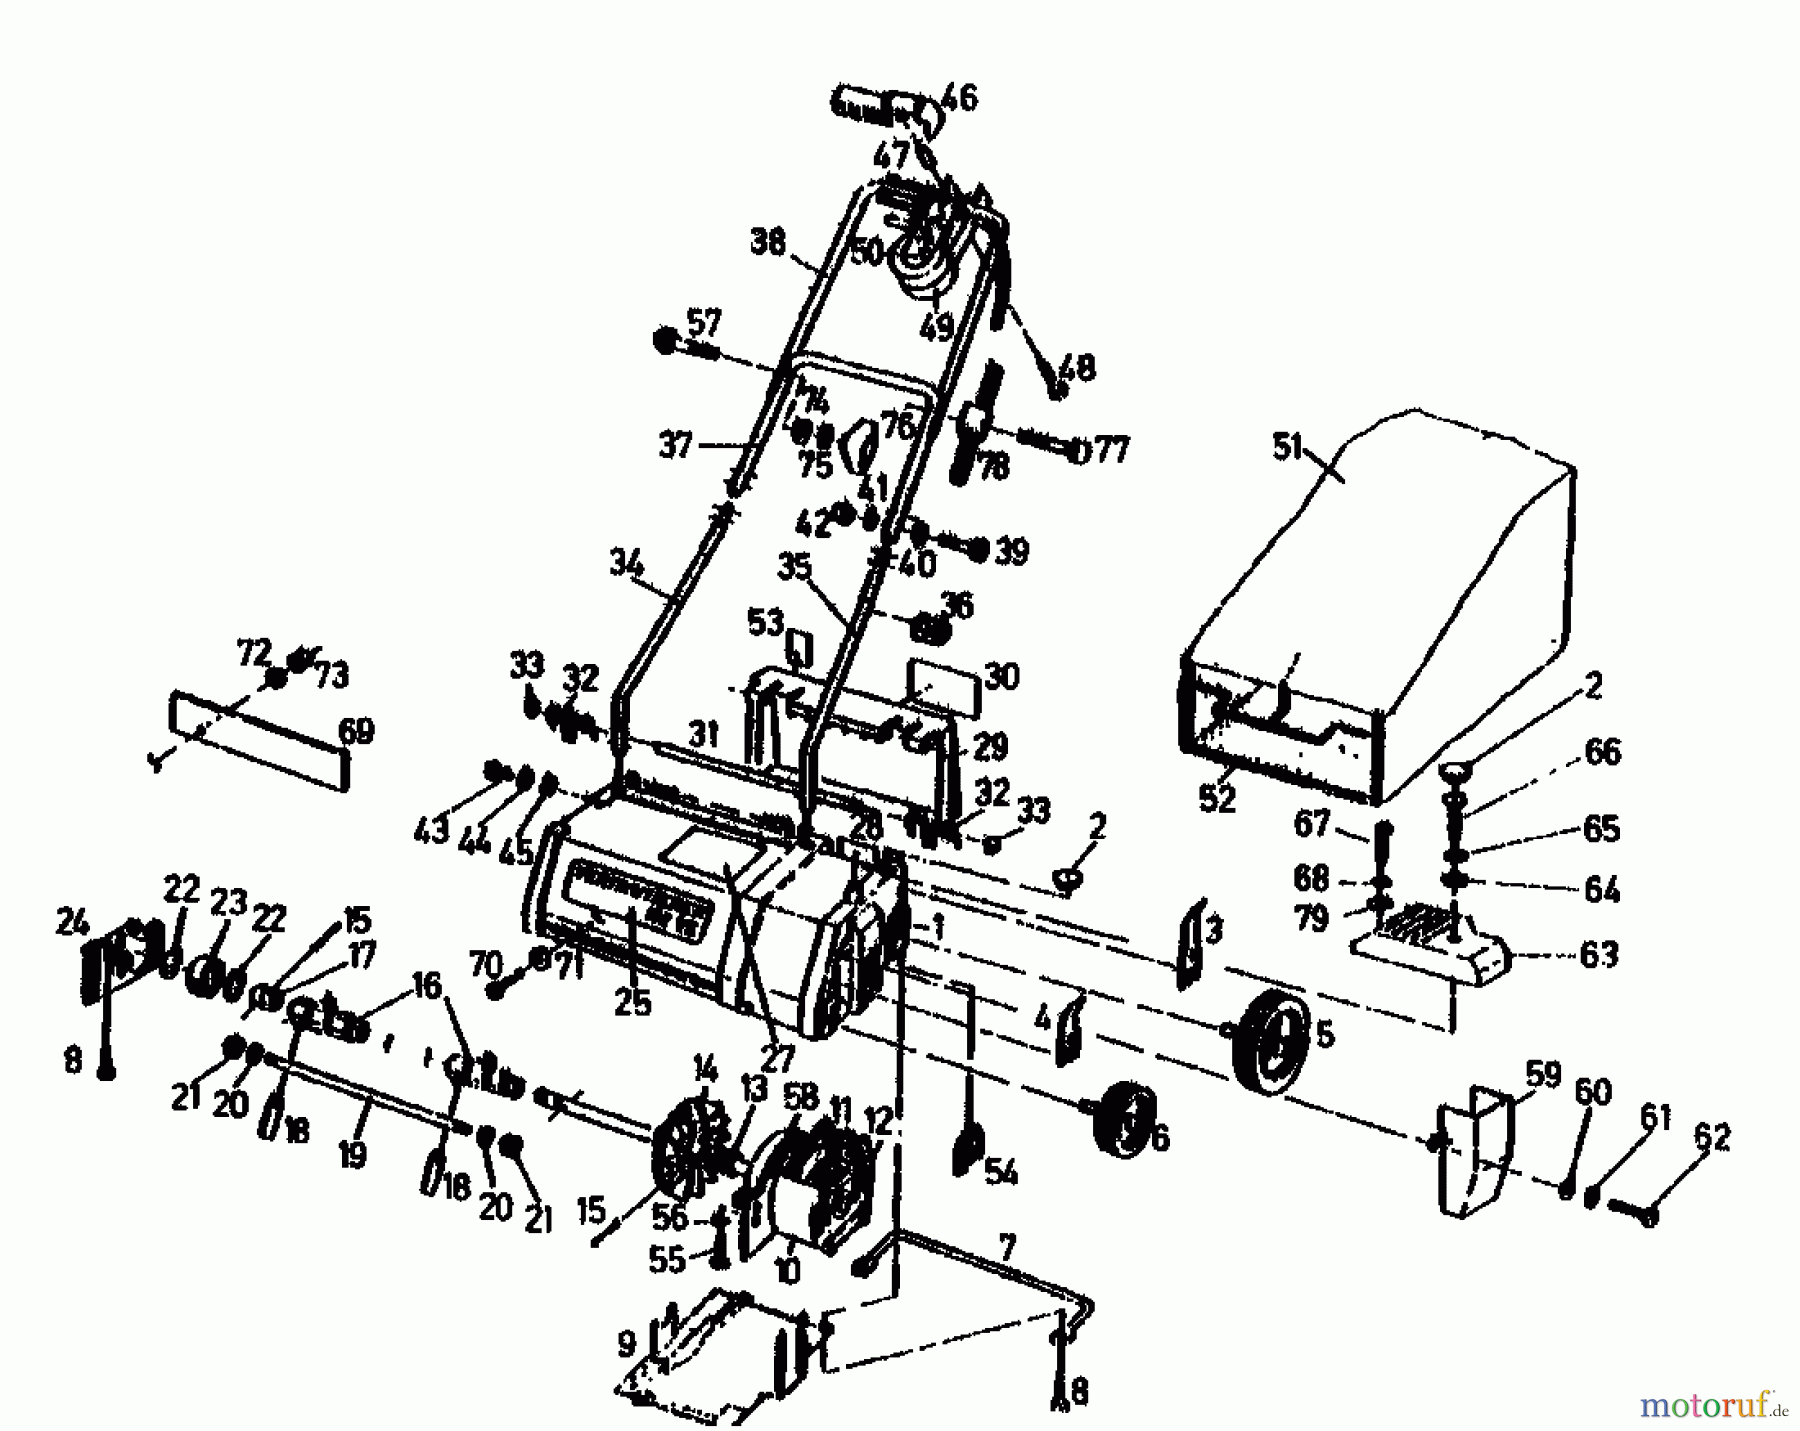  Golf Scarificateur électrique 132 VE 02846.03  (1991) Machine de base